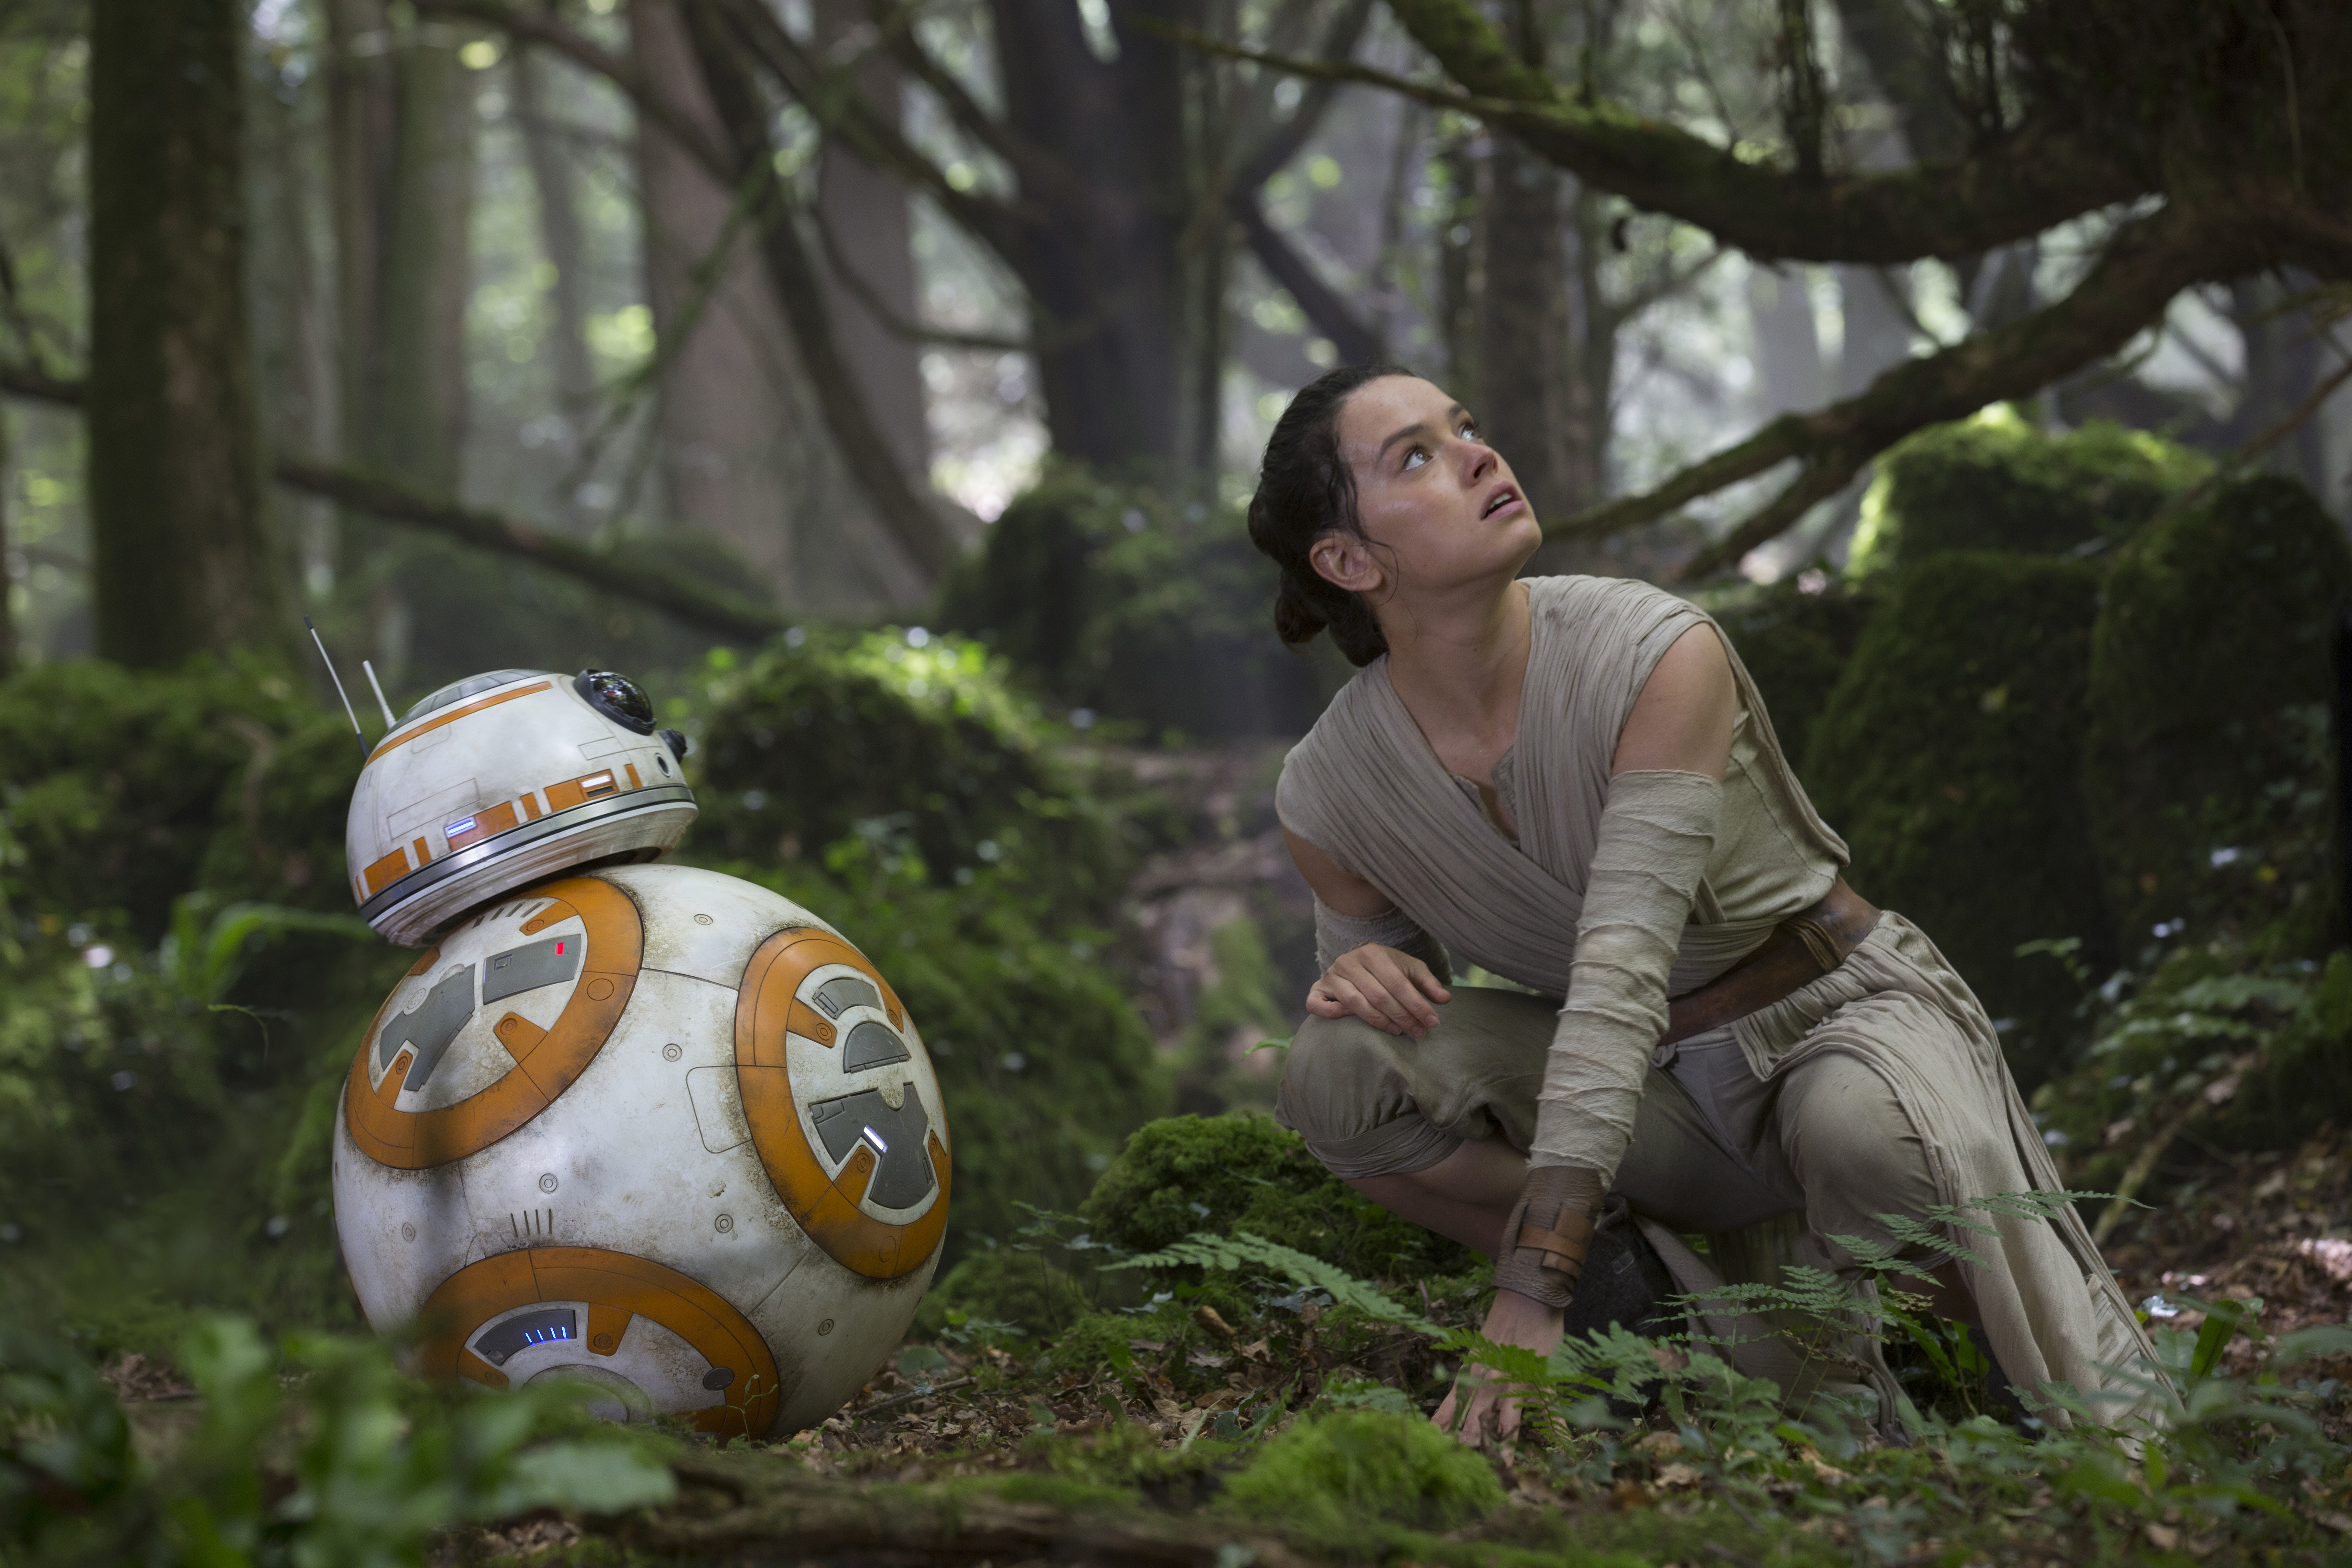 Bb 8 Daisy Ridley Rey Star Wars Star Wars Star Wars Episode Vii The Force Awakens 5760x3840